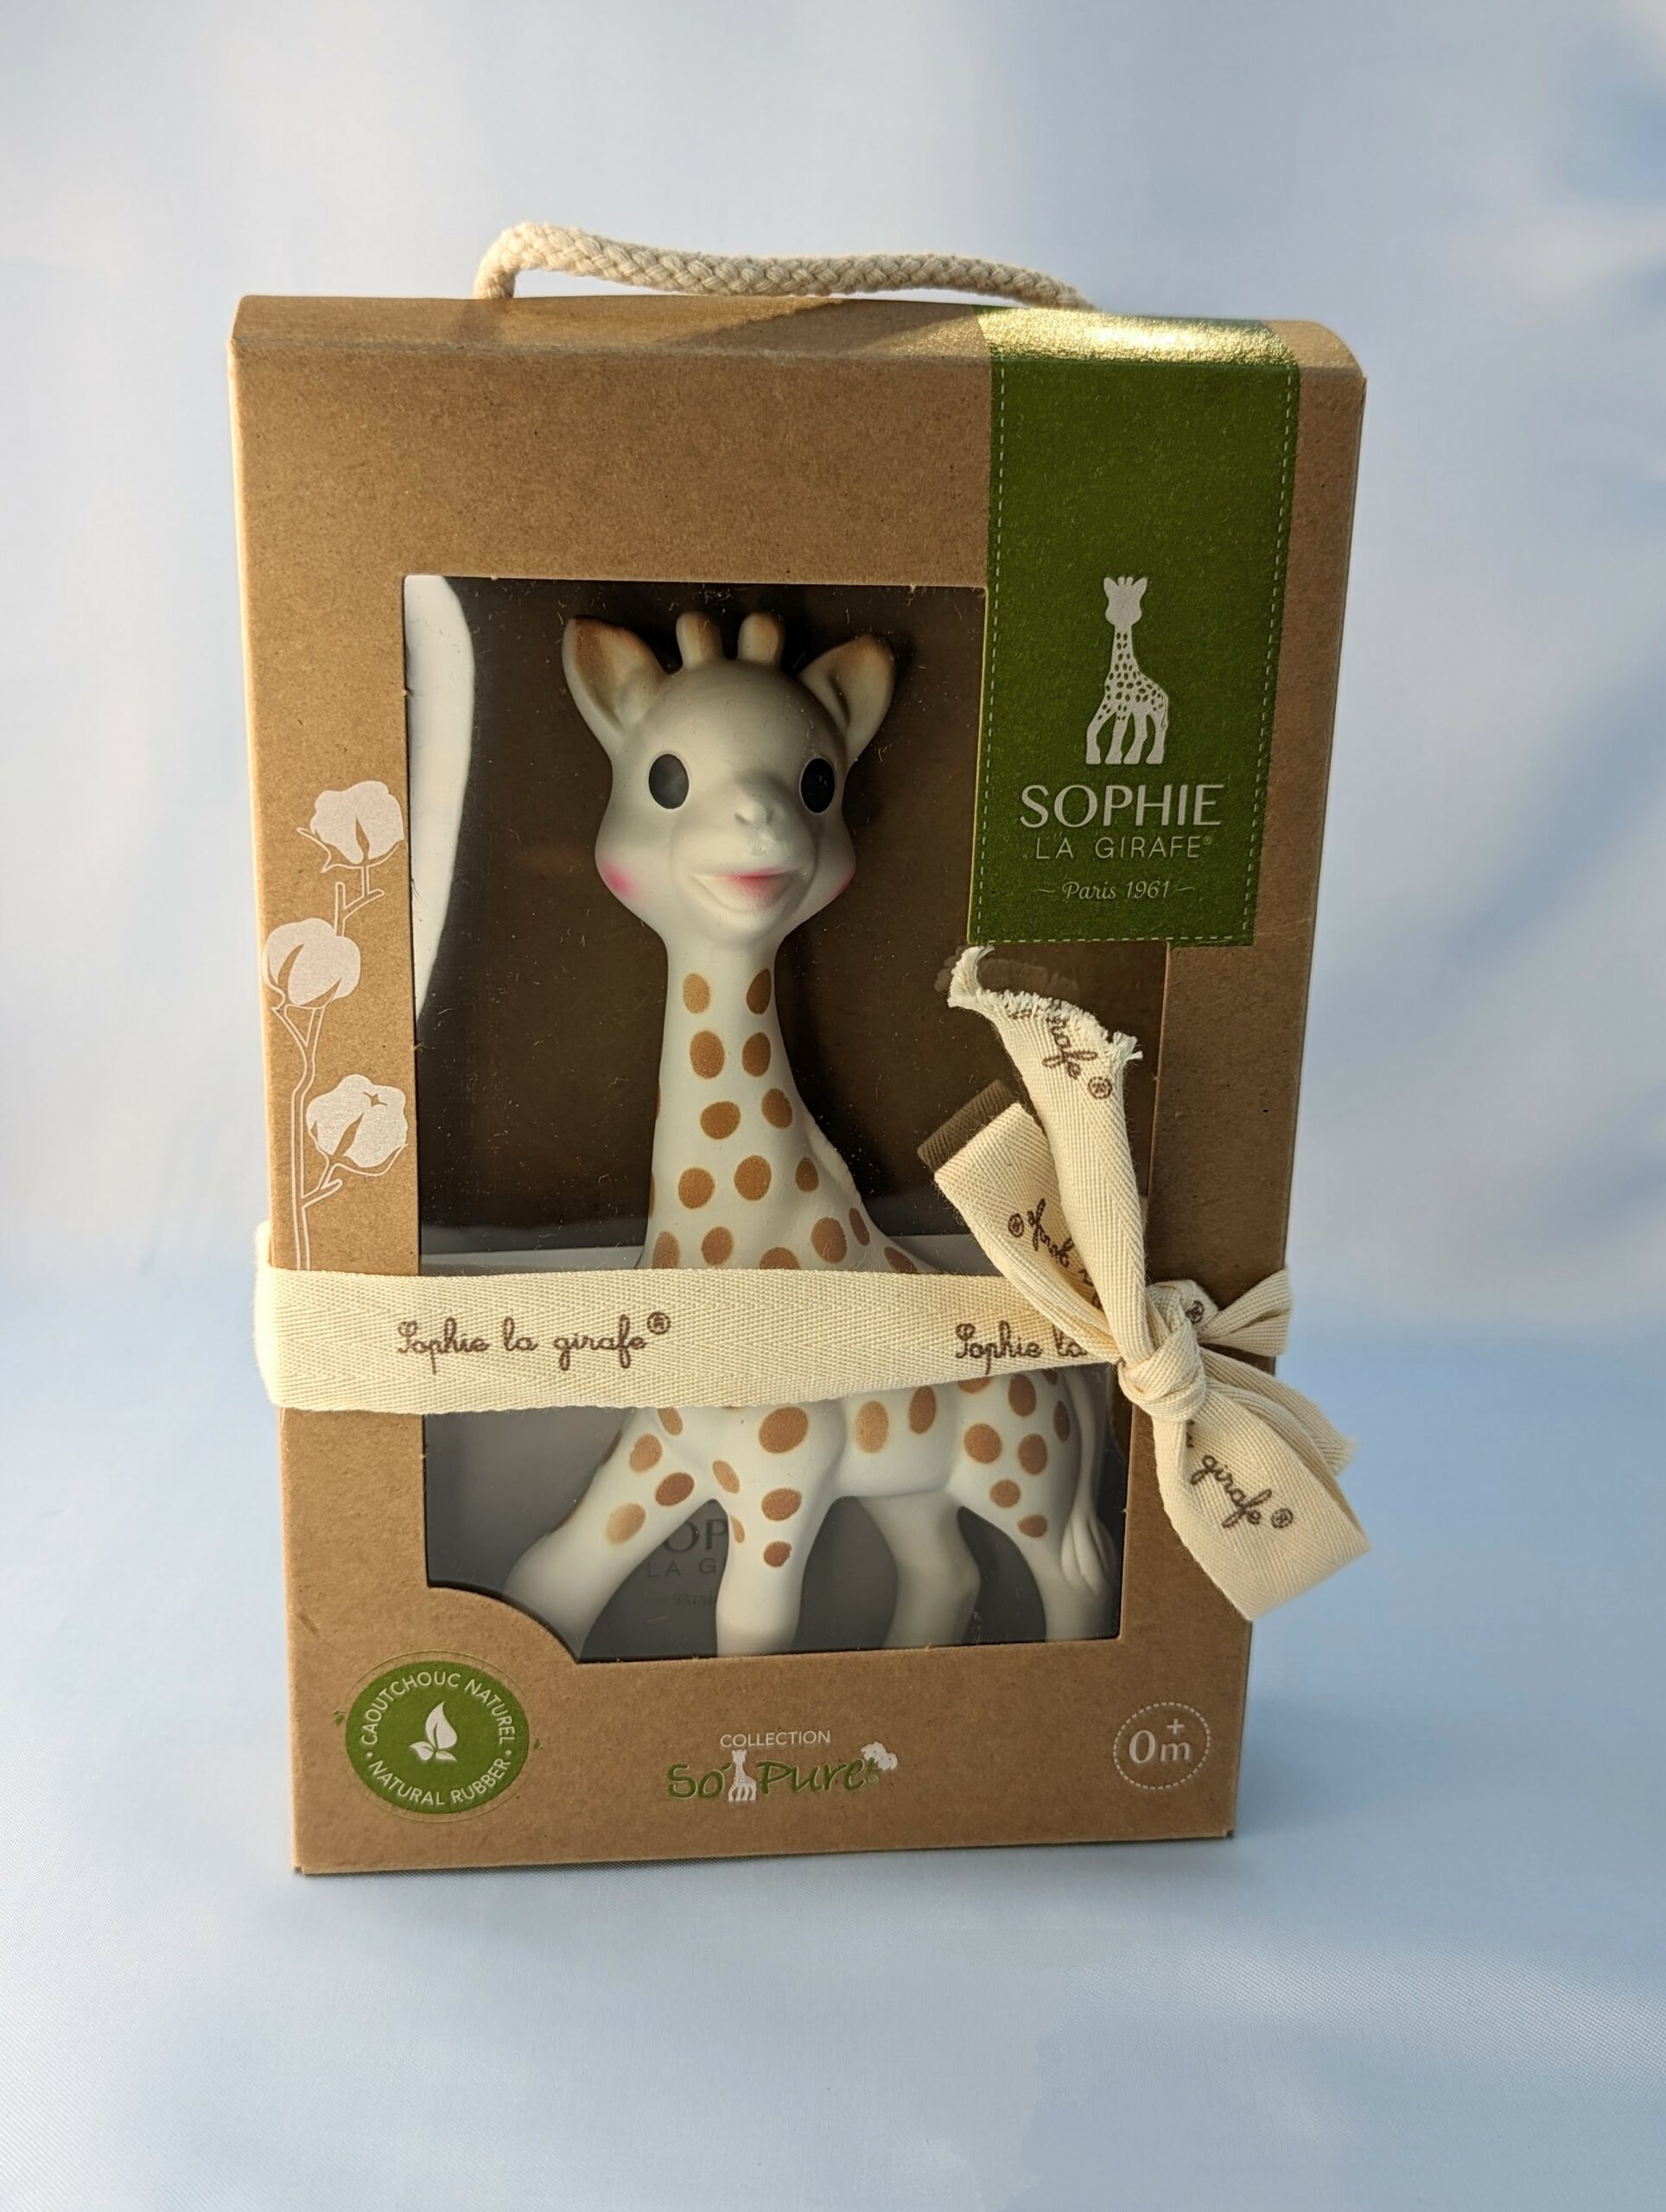 🎁 CONCOURS 🎁 Pour - Sophie la girafe l'officielle